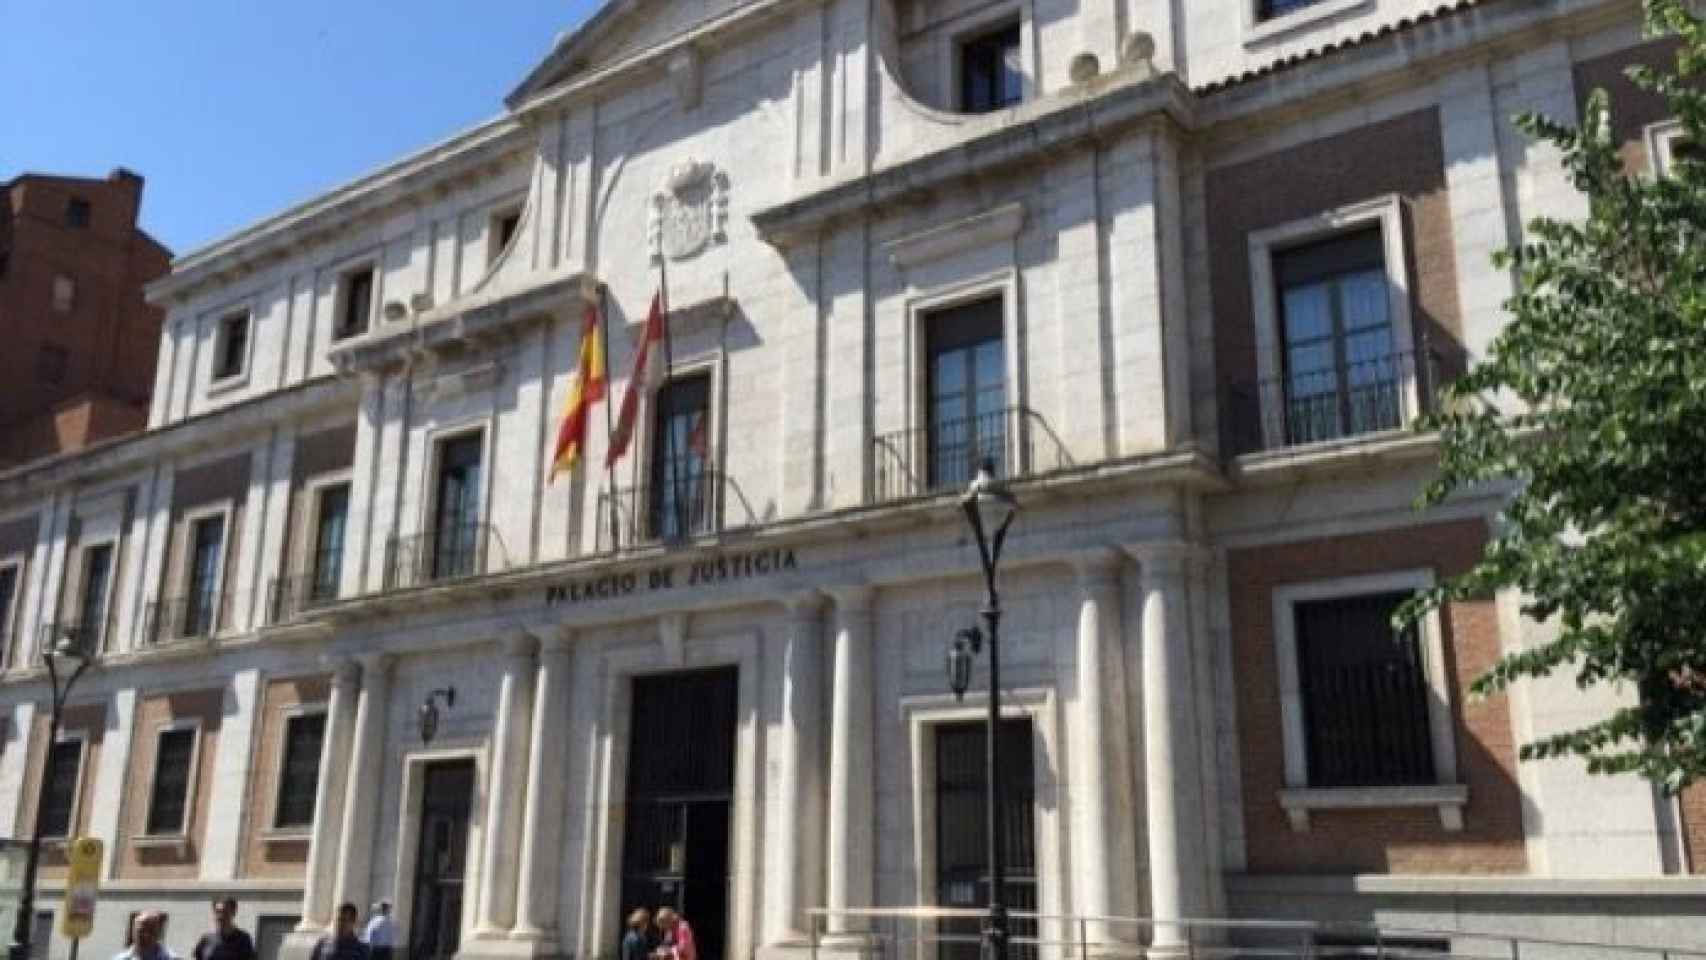 La Audiencia Provincial de Valladolid en una imagen de archivo